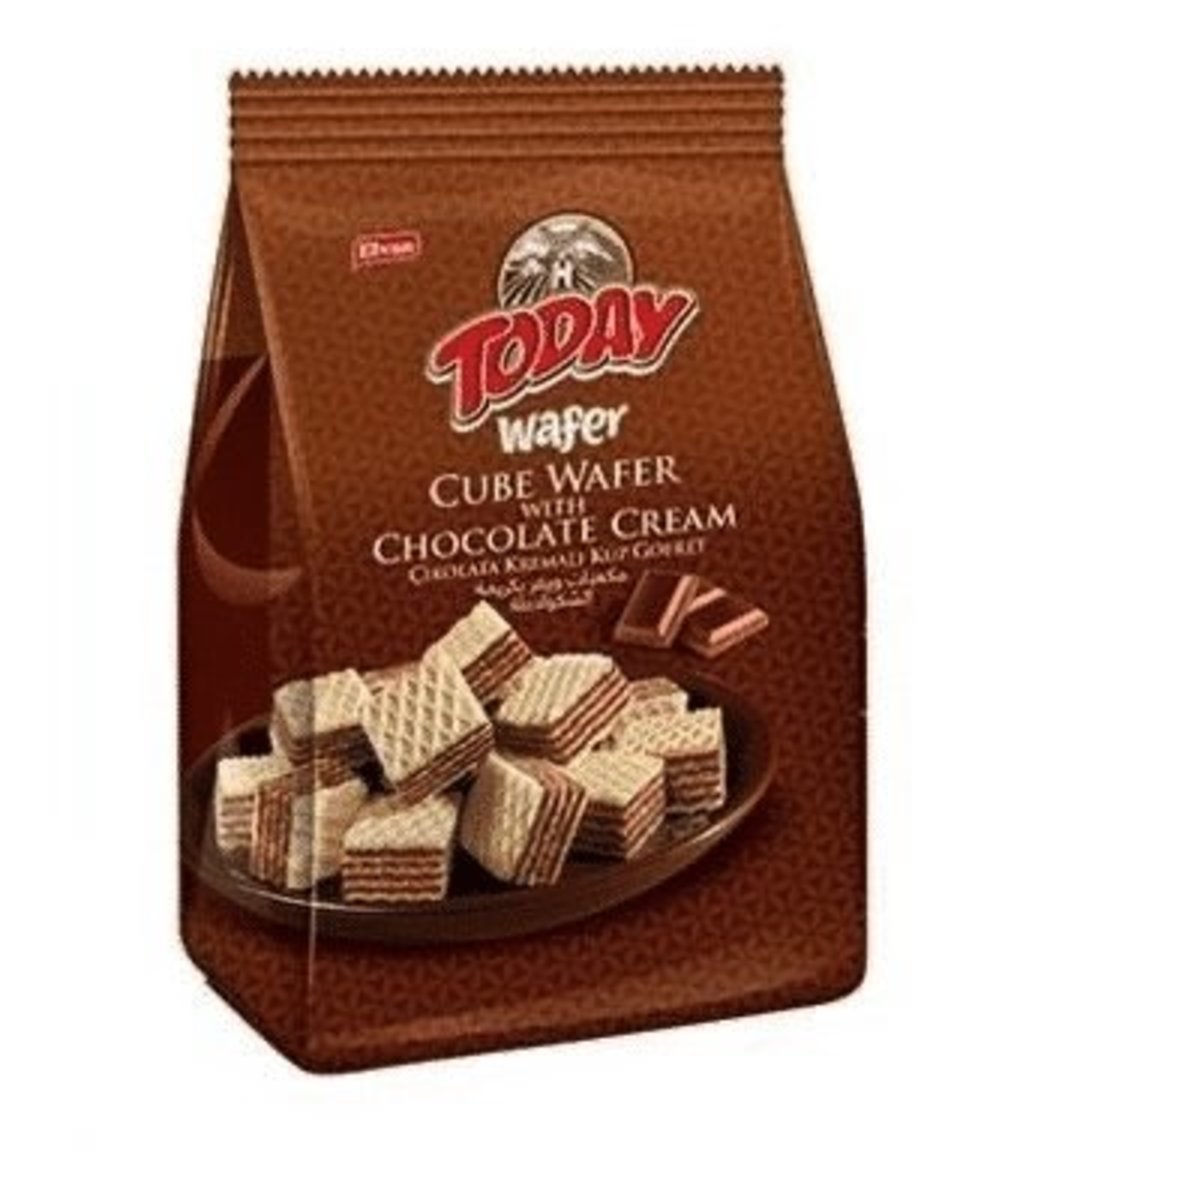 全城熱賣 Turkey Elvan Today Wafer Cube Wafer With Chocolate Cream 0g Parallel Import Hktvmall Online Shopping